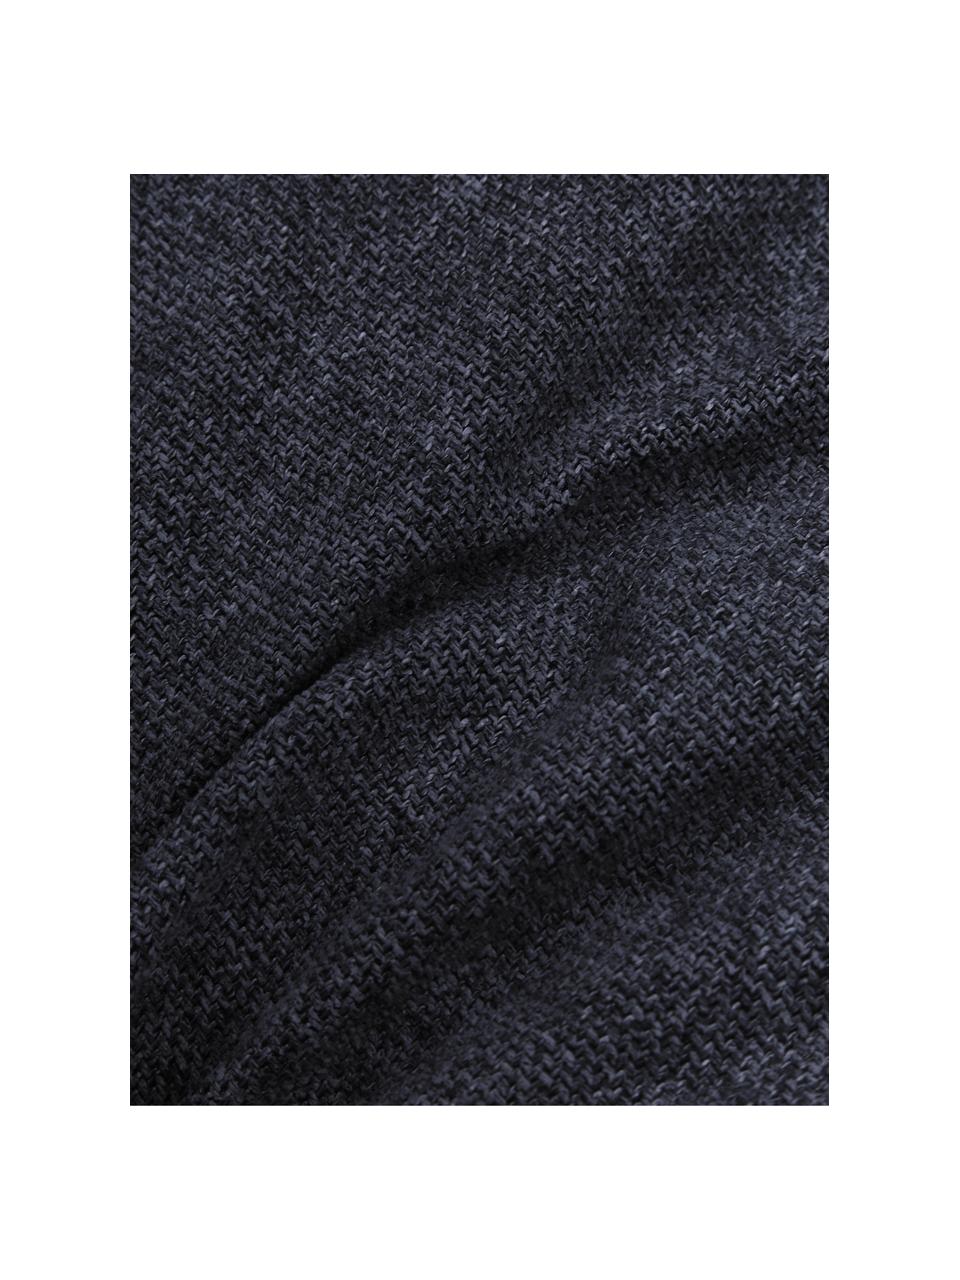 Sofa-Kissen Lennon in Dunkelblau, Bezug: 100% Polyester, Webstoff Blau, 60 x 60 cm